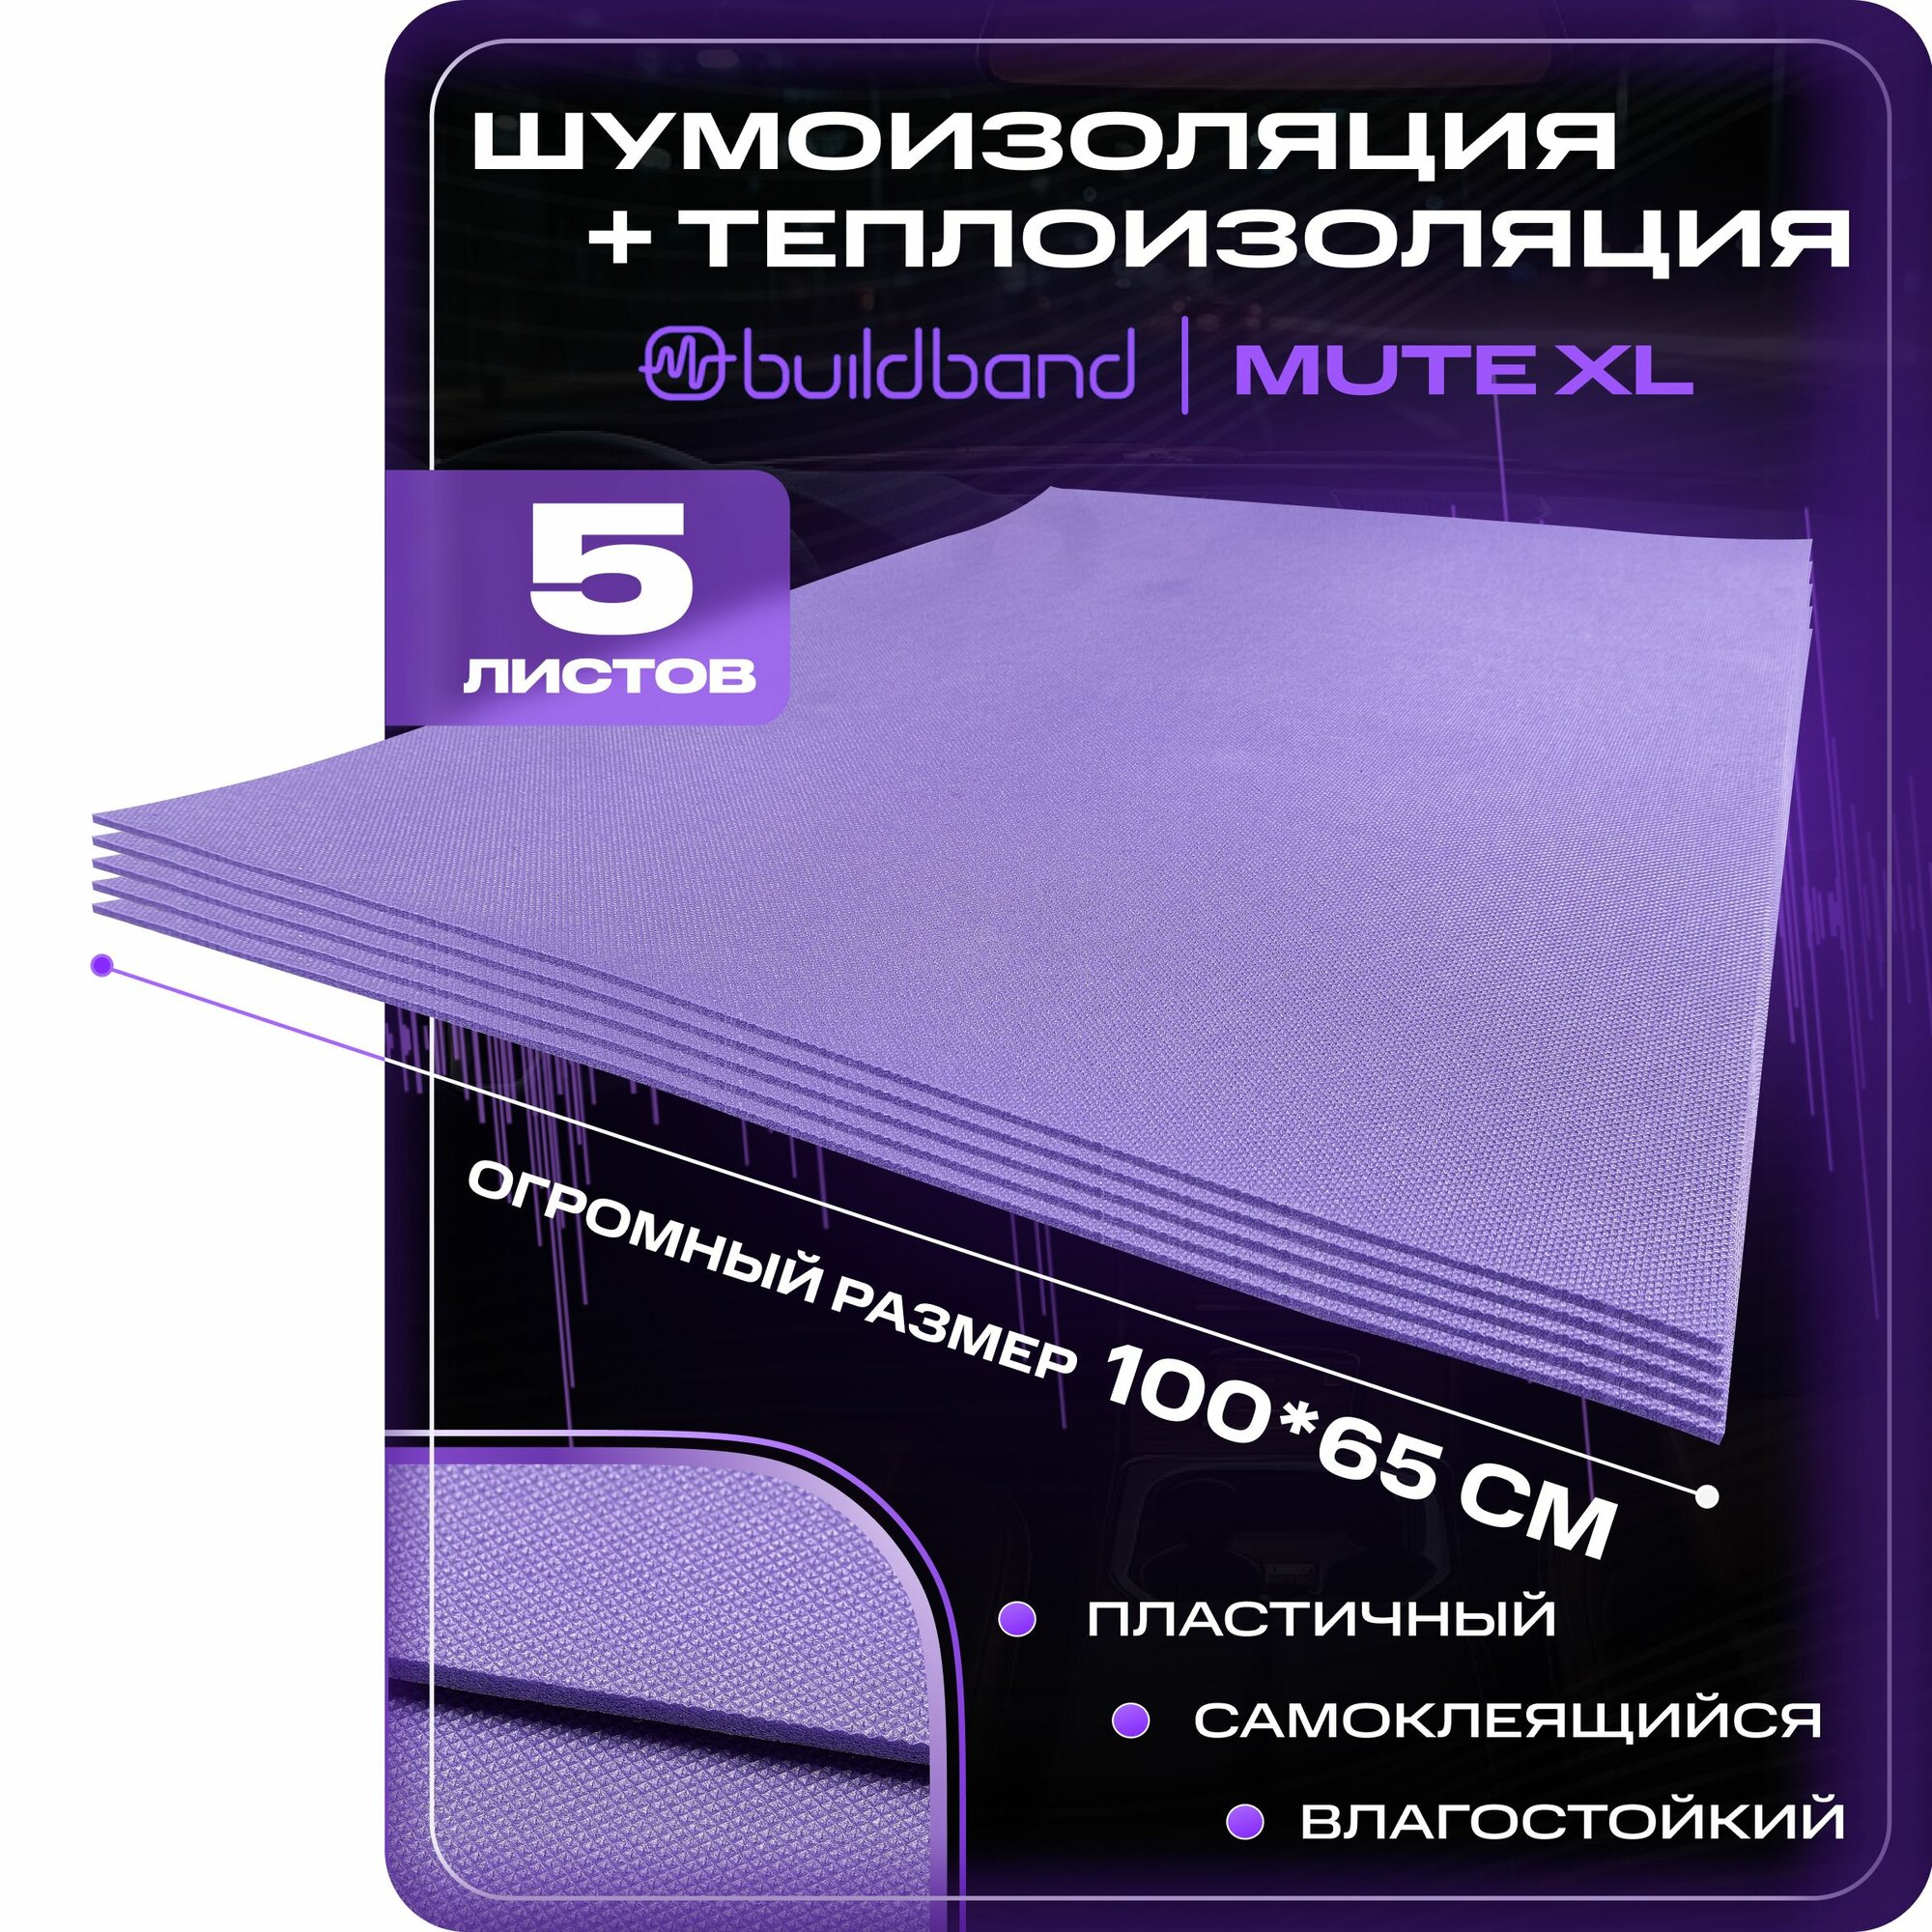 Шумоизоляция для автомобиля buildband MUTE XL, 5 листов (65х100 см) /Набор влагостойкой звукоизоляции с теплоизолятором/комплект самоклеящаяся шумка для авто